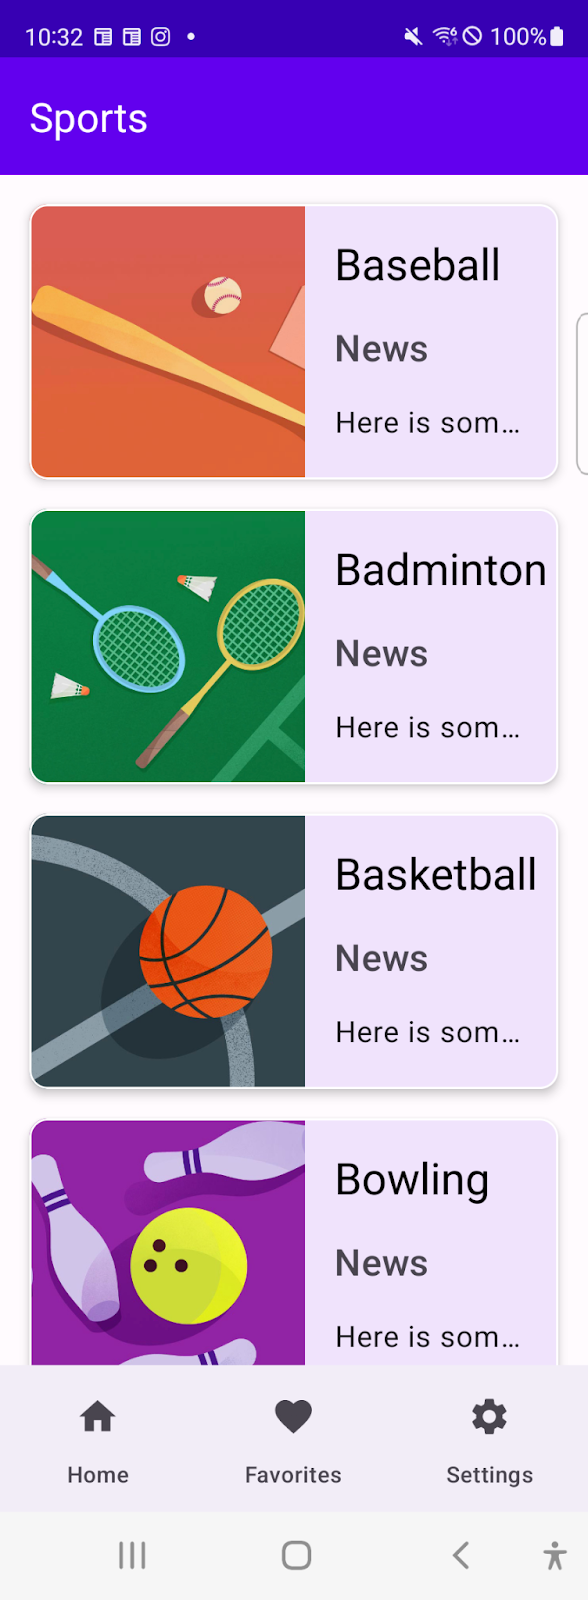 La app de Deportes muestra una lista de deportes en una ventana compacta con una barra de navegación como componente principal de navegación.